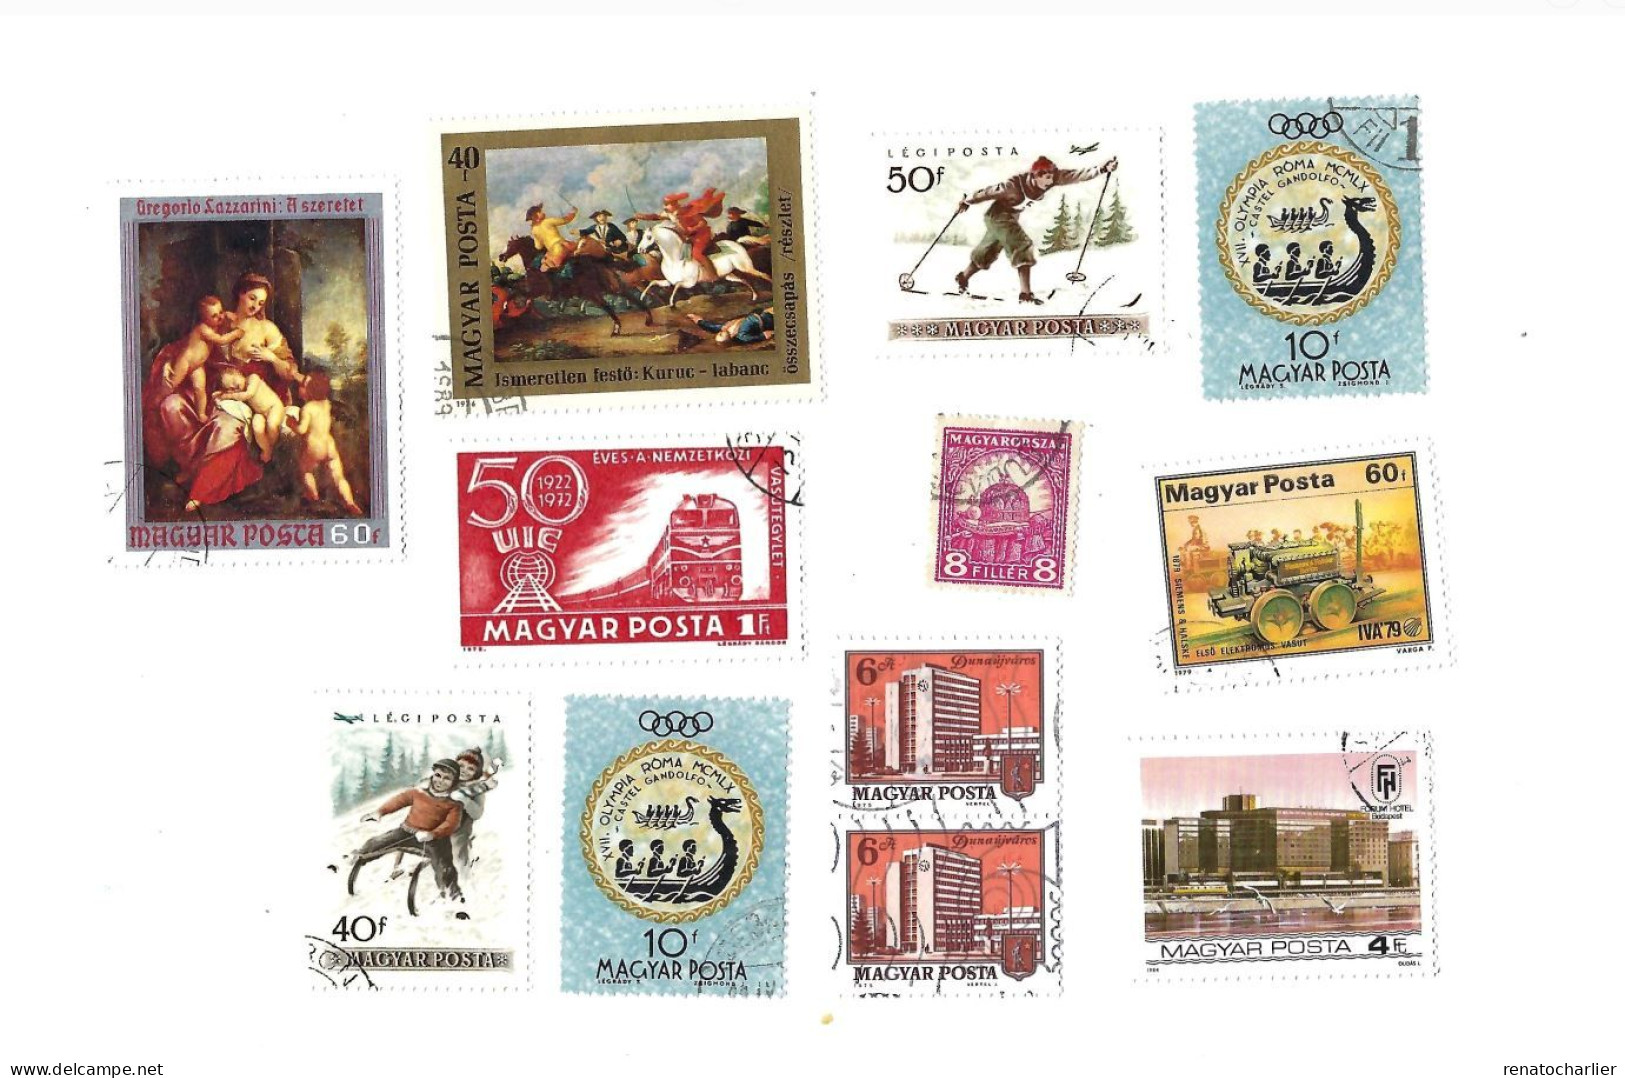 Collection de 110 timbres oblitérés.